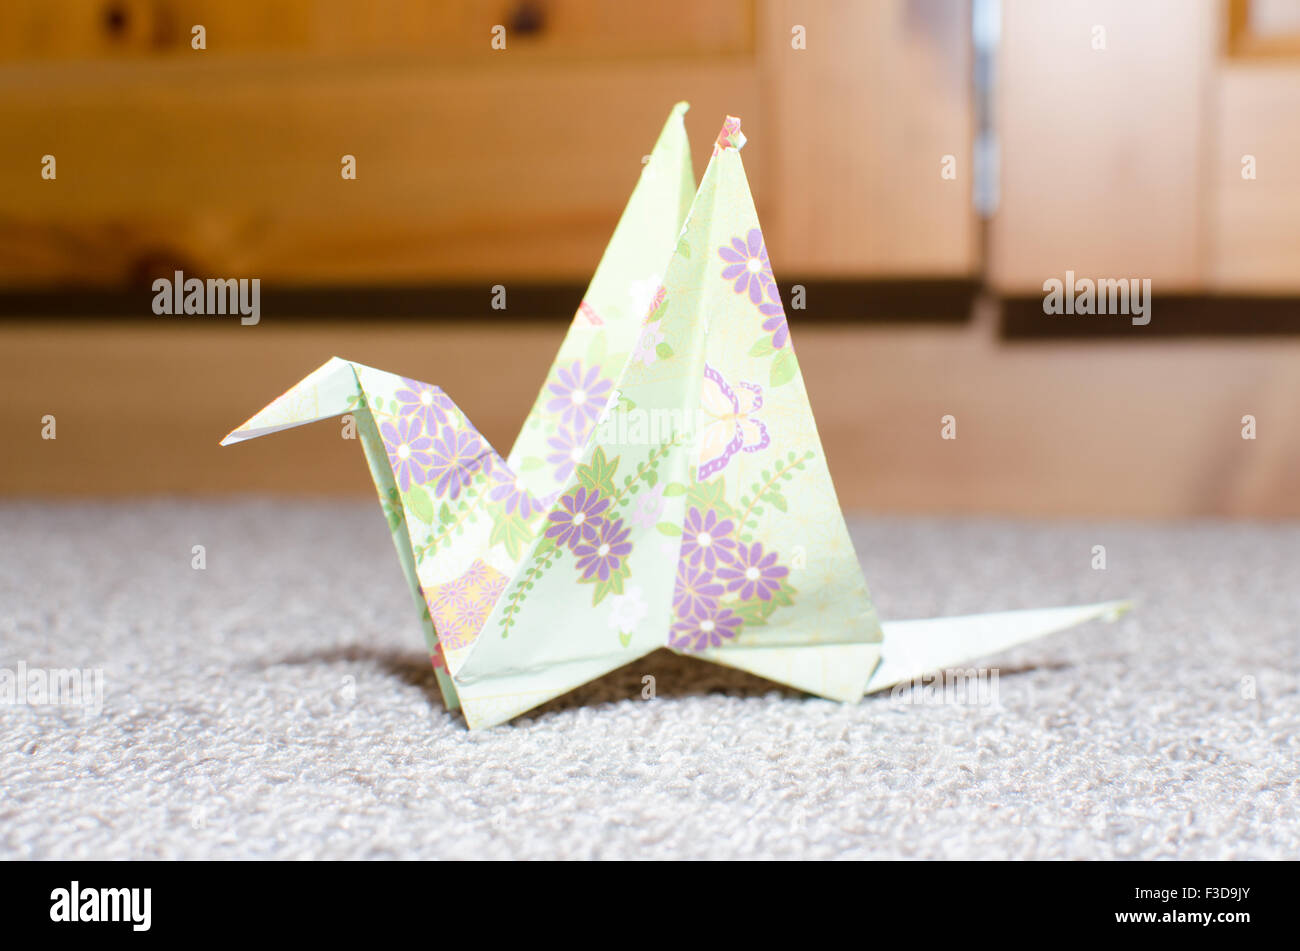 Ein Papier falten, Origami Vogel Nahaufnahme auf einem grauen Teppich Stockfoto